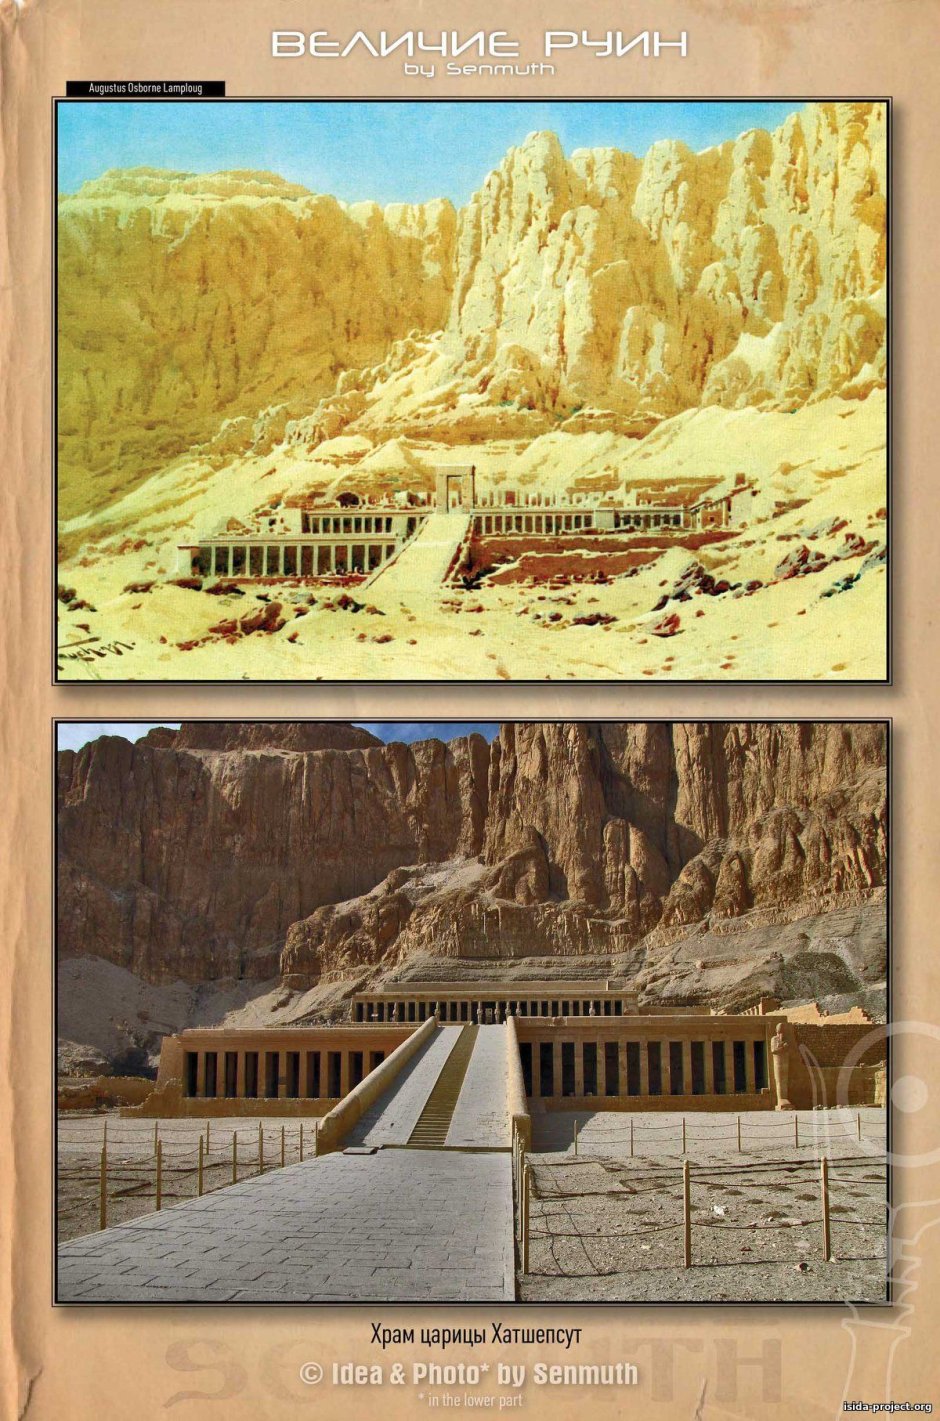 Храм царицы Хатшепсут в Египте уровни